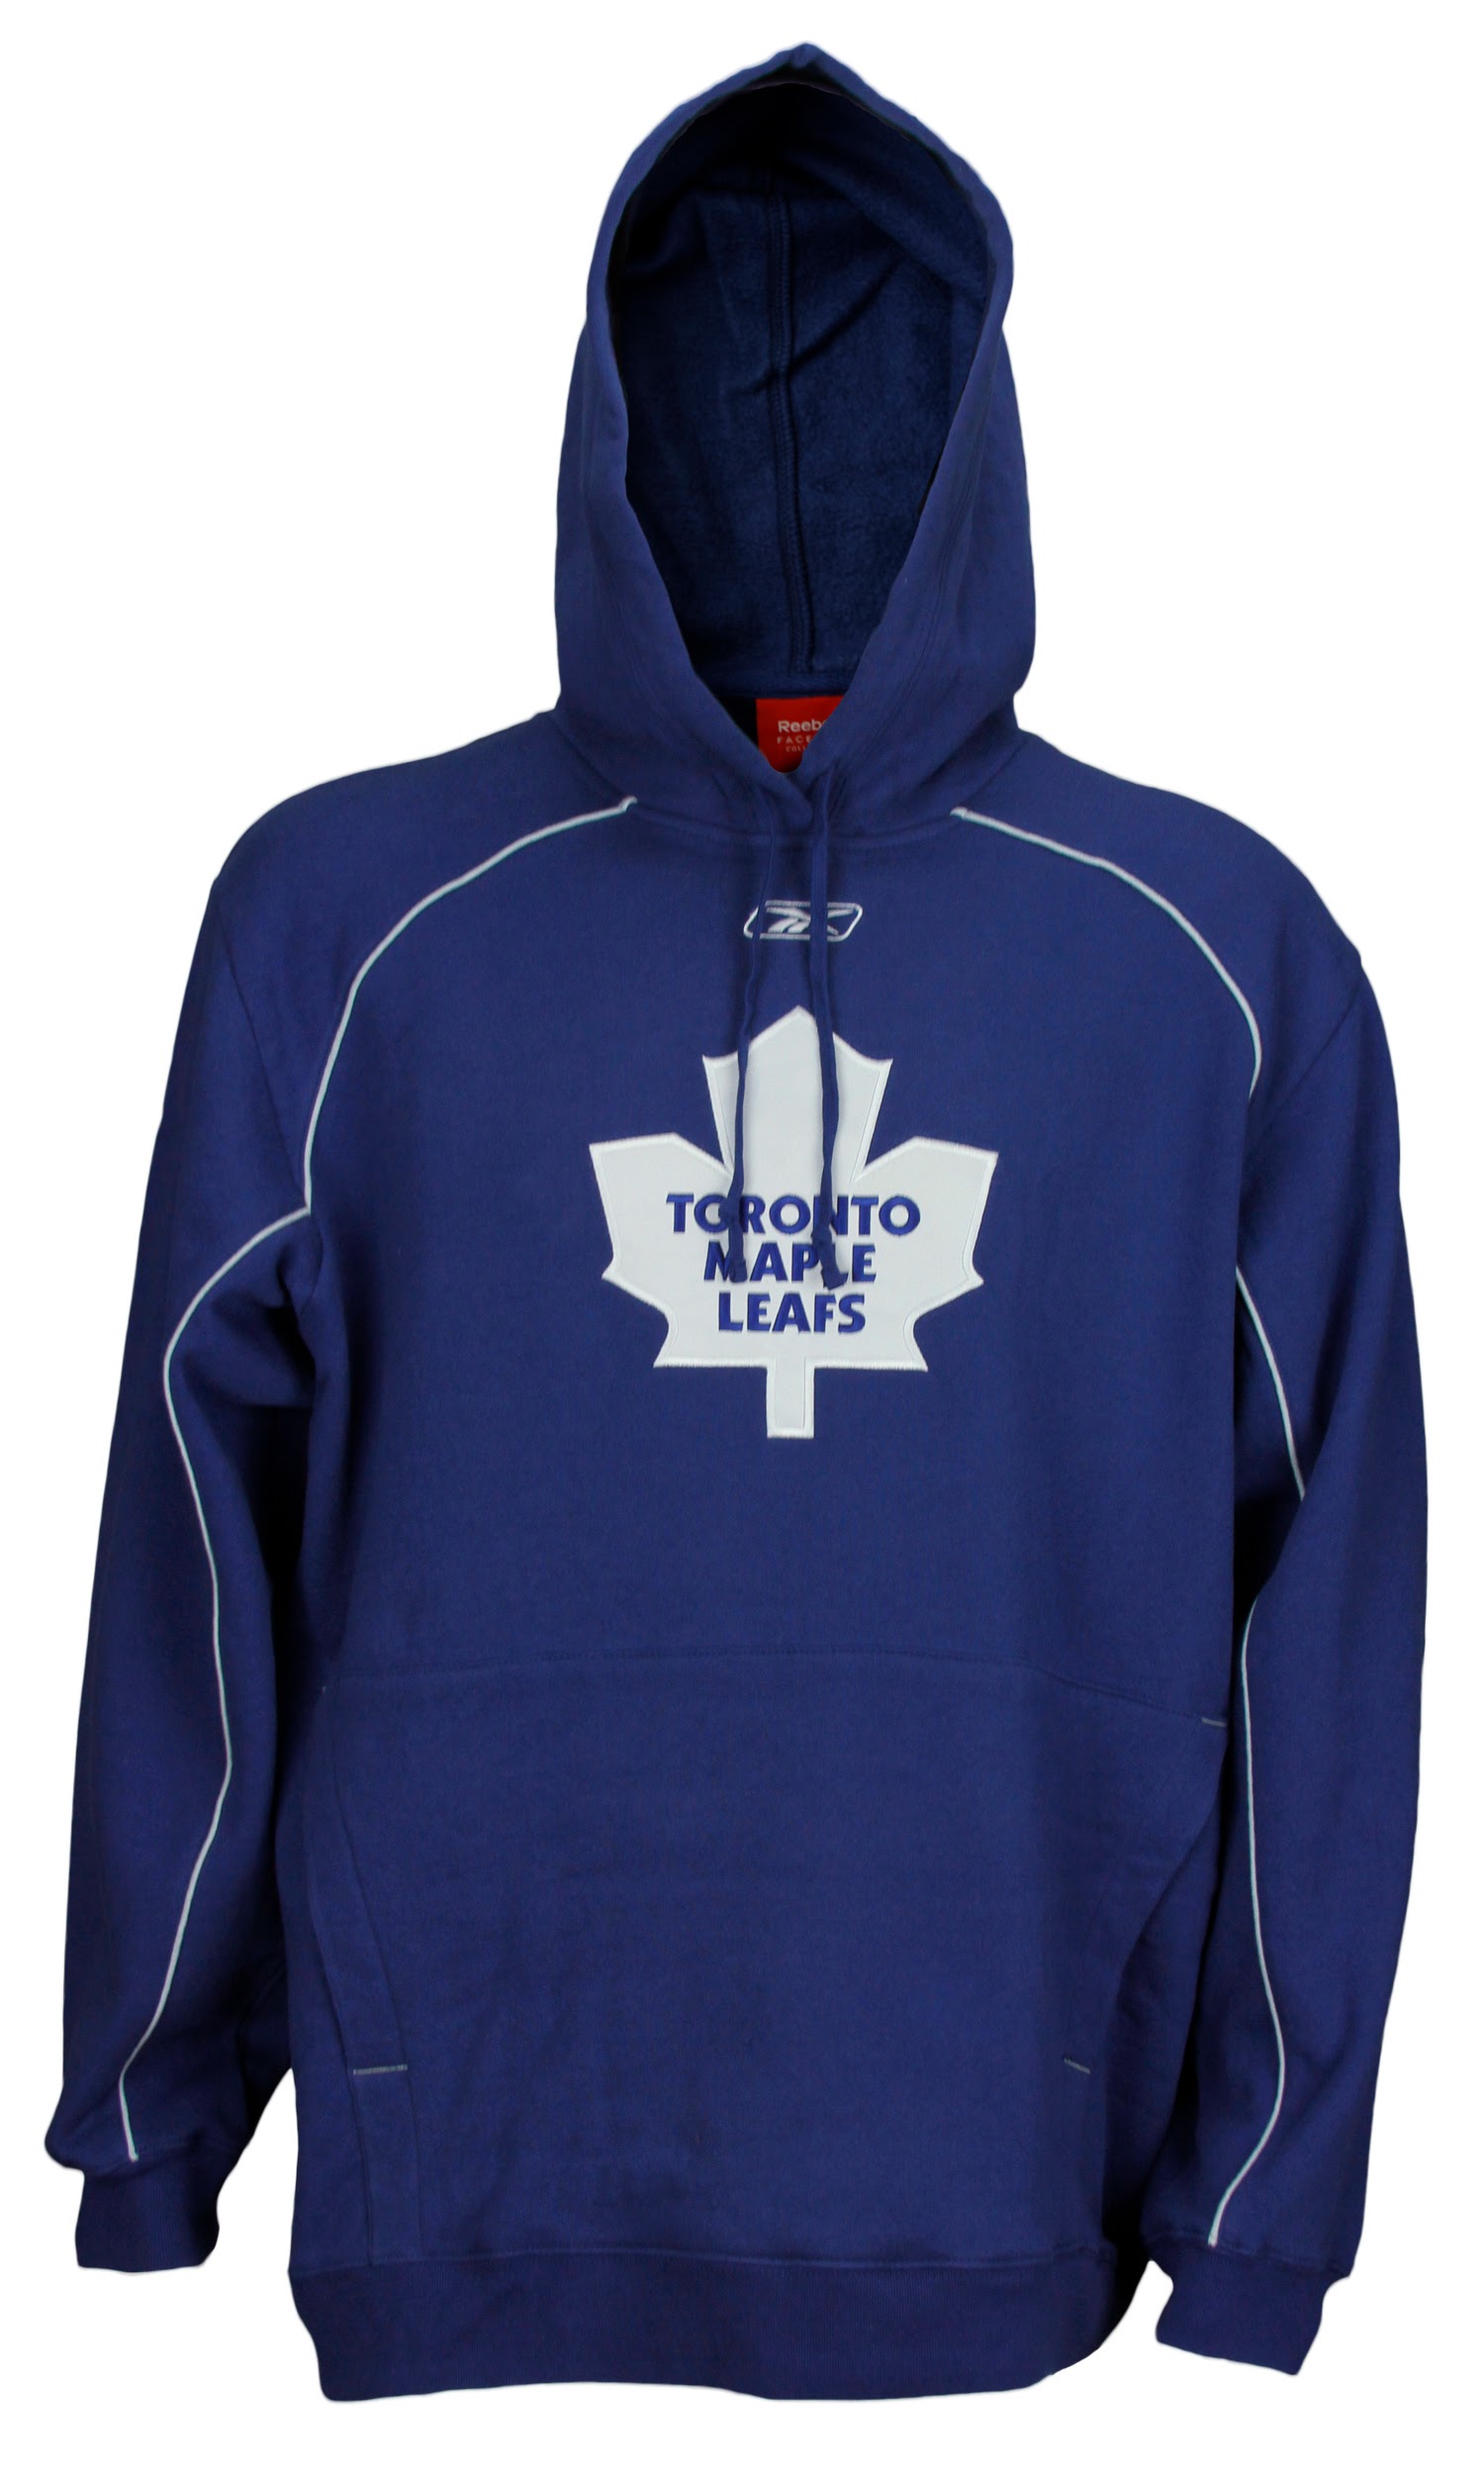 Reebok NHL Hockey Men's Toronto Maple Leafs Hoodie Hooded Sweatshirt, Blue